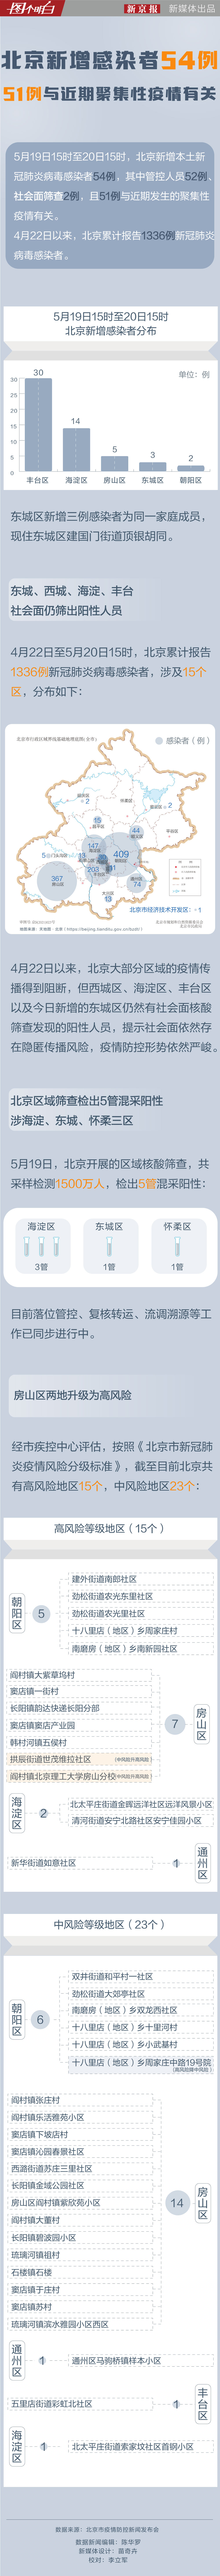 图个明白｜北京新增感染者54例51例与近期聚集性疫情有关